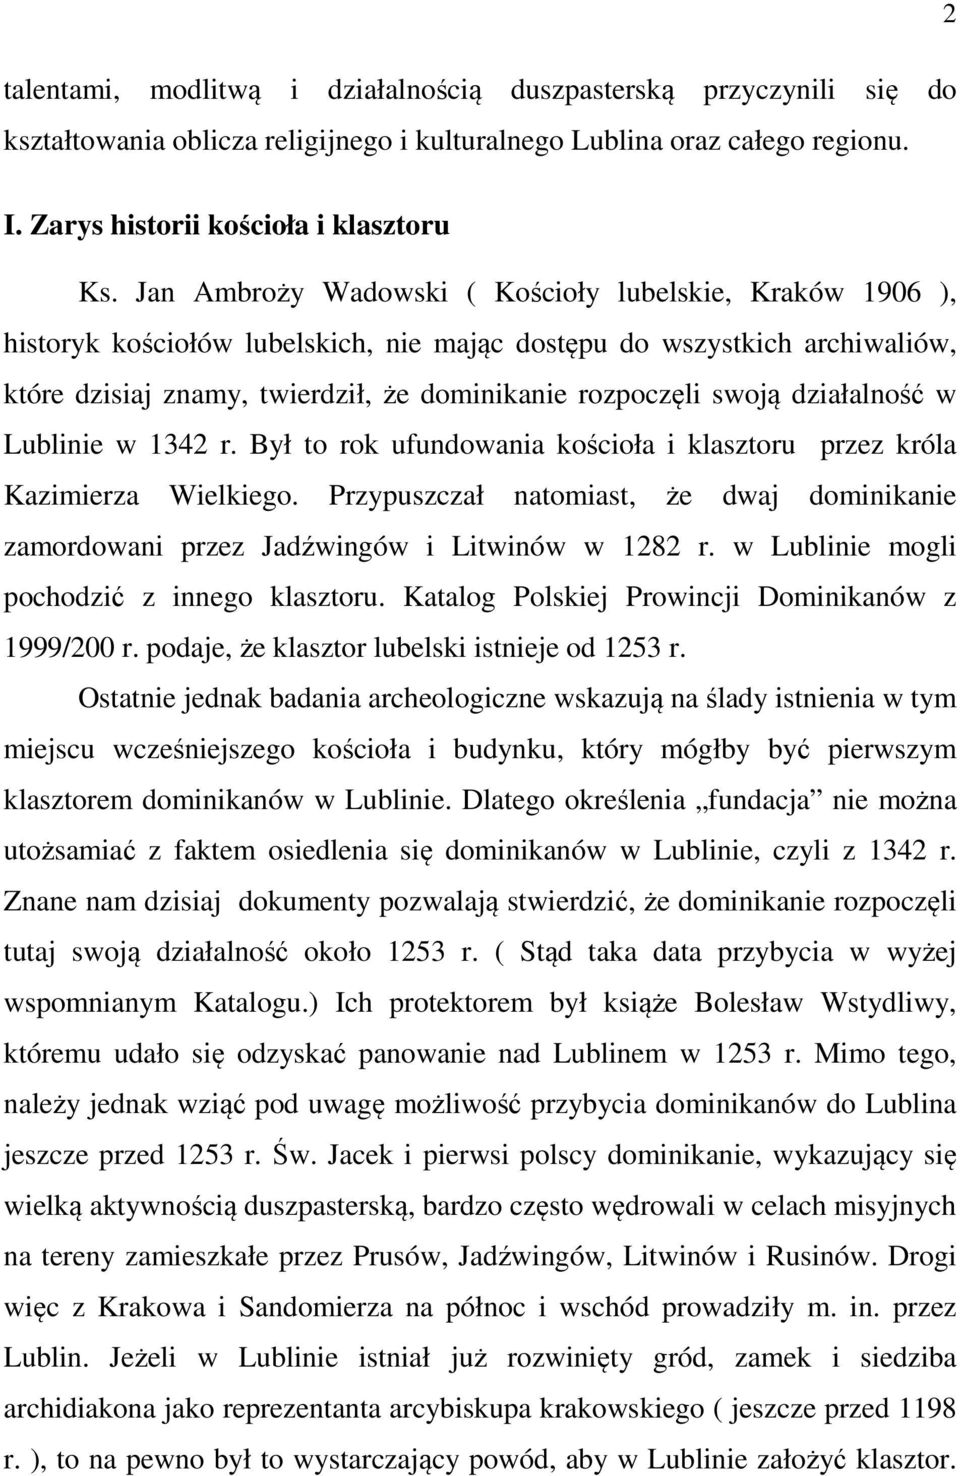 działalność w Lublinie w 1342 r. Był to rok ufundowania kościoła i klasztoru przez króla Kazimierza Wielkiego.